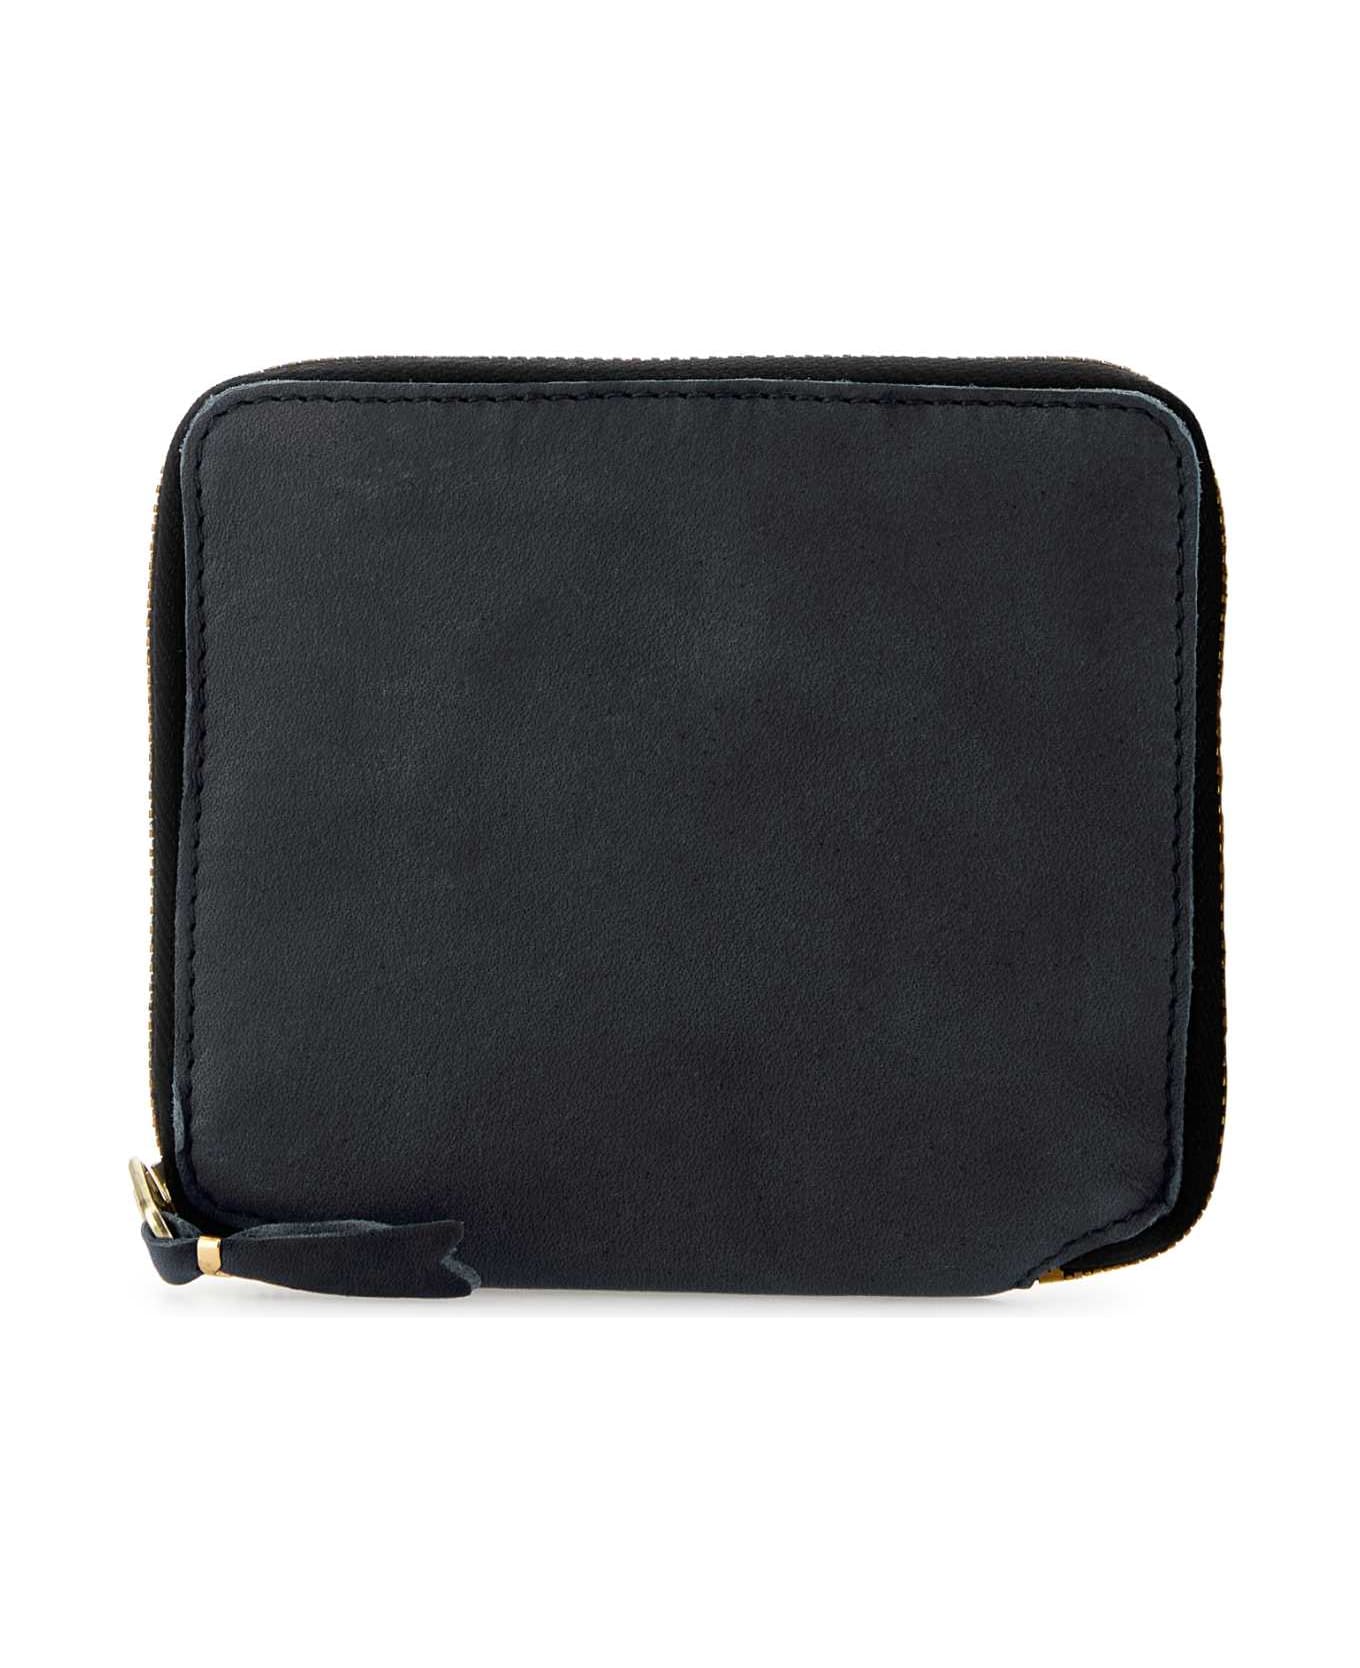 Comme des Garçons Black Leather Wallet - BLACK 財布